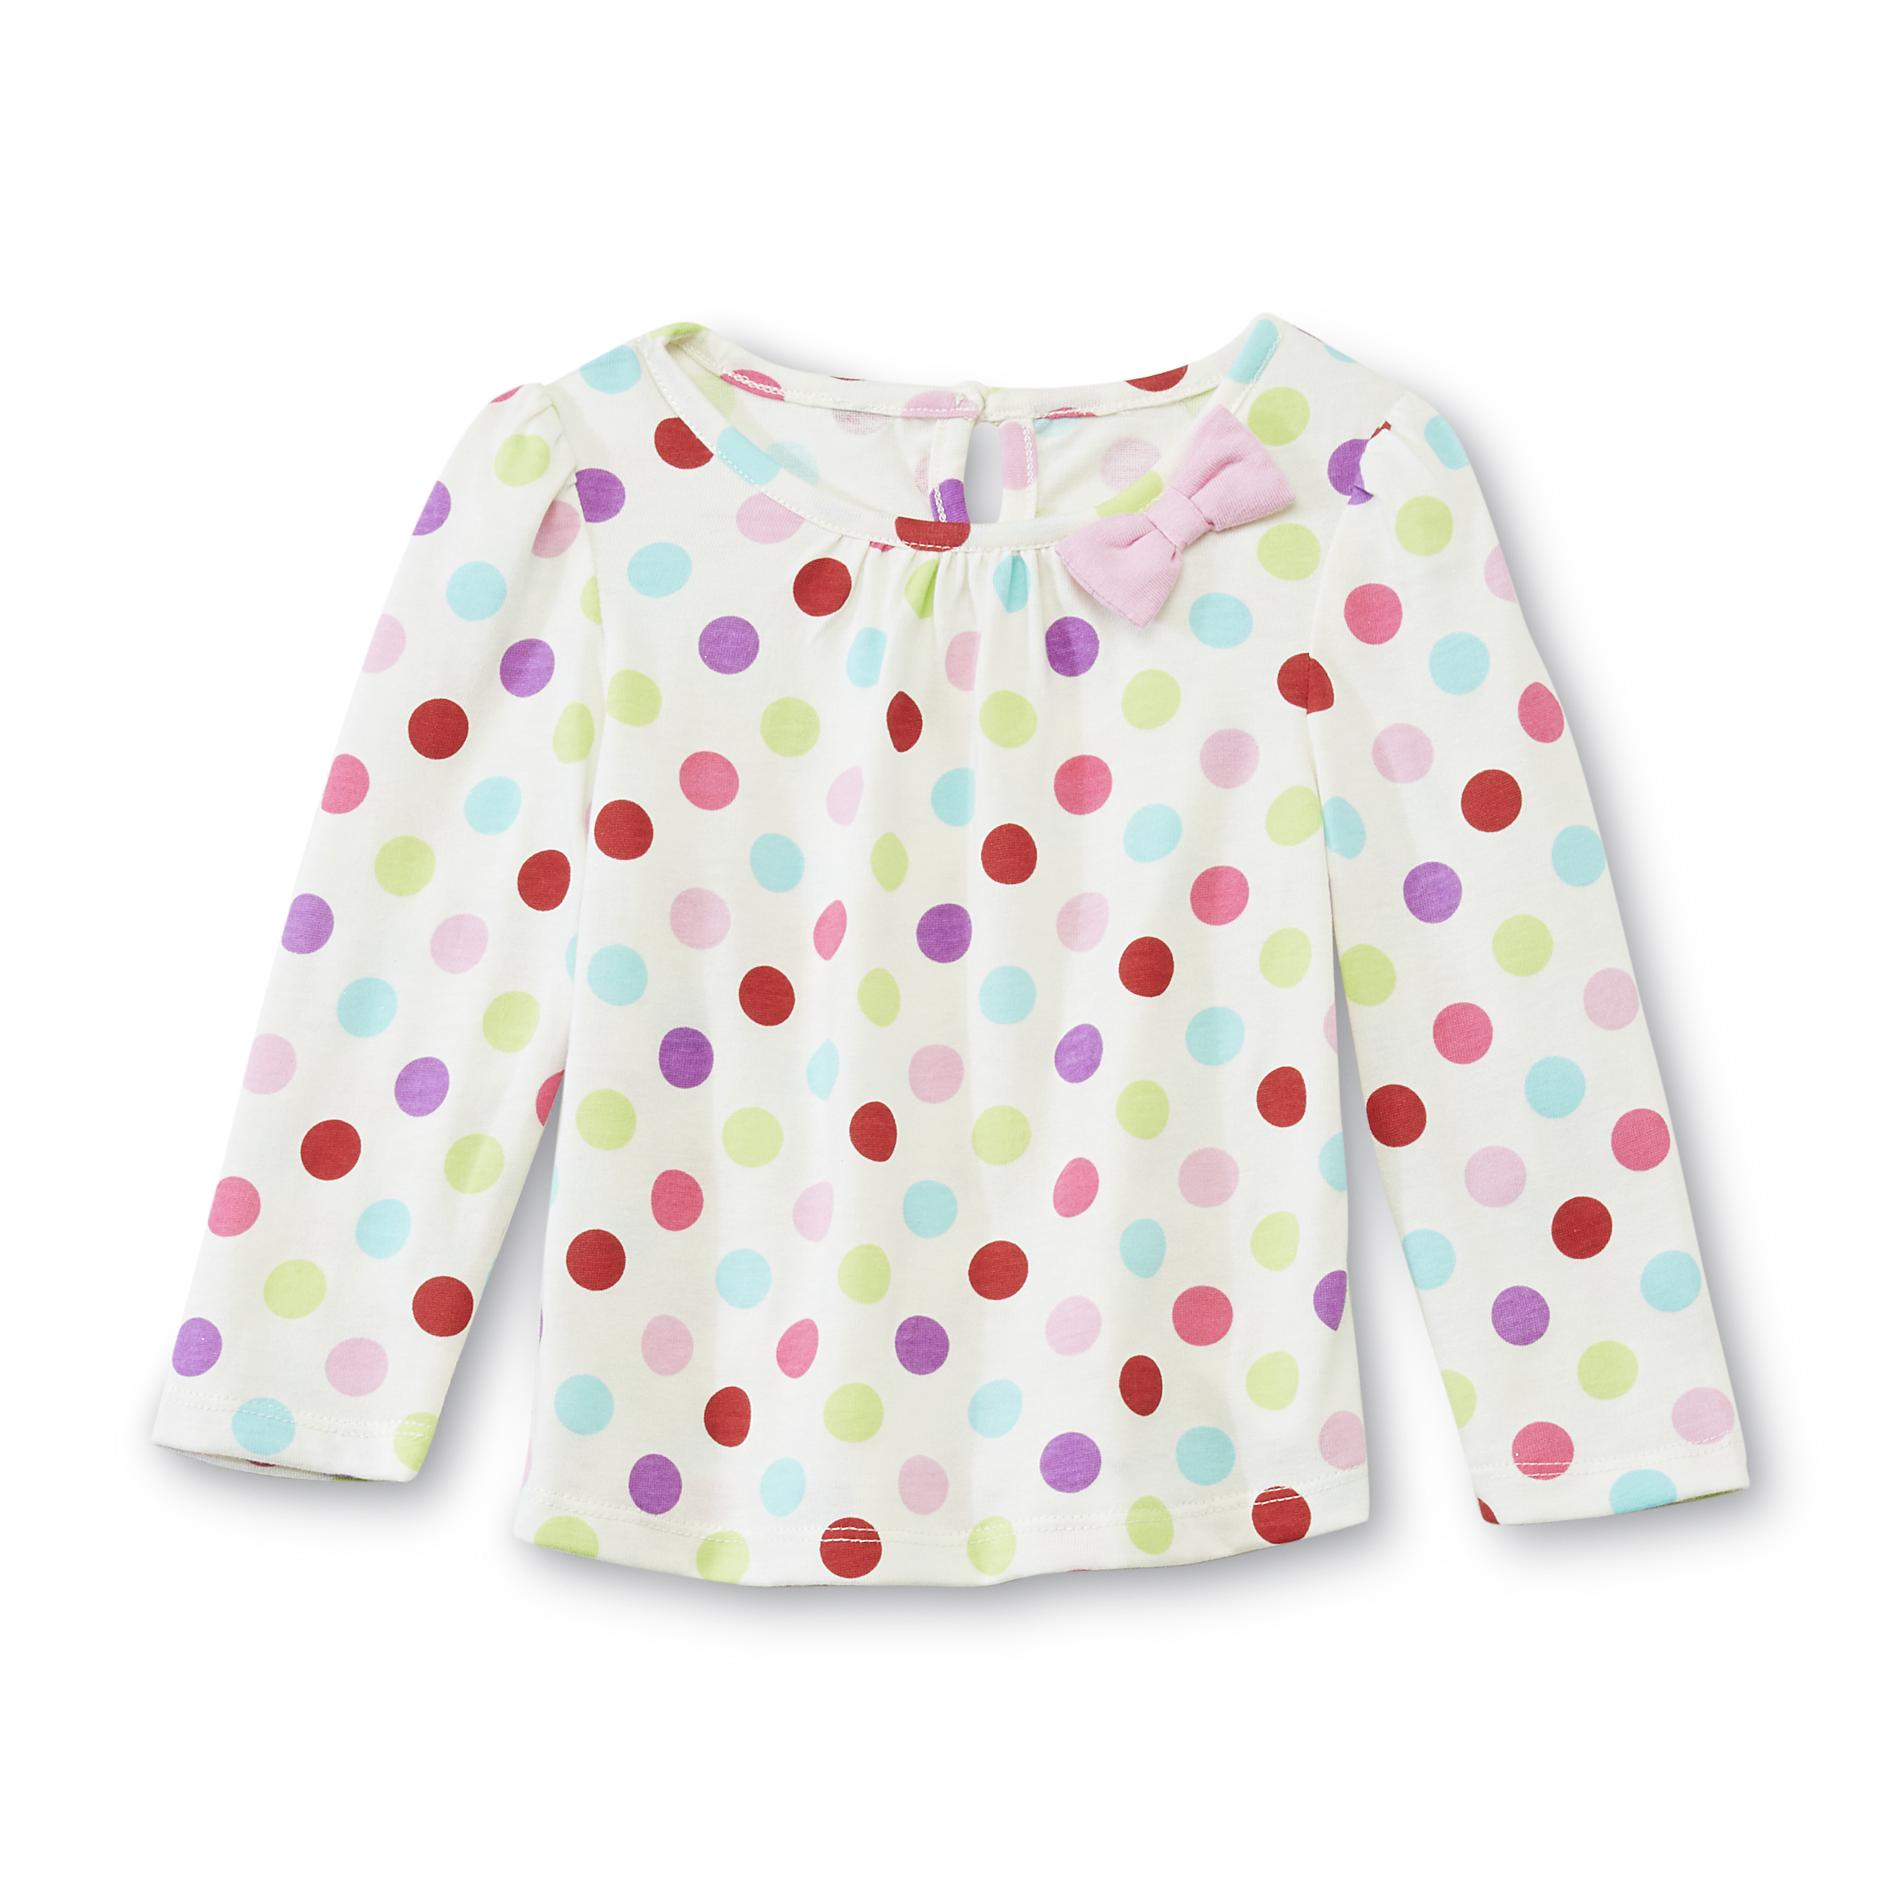 WonderKids Infant & Toddler Girl's Long-Sleeve Top - Polka-Dot